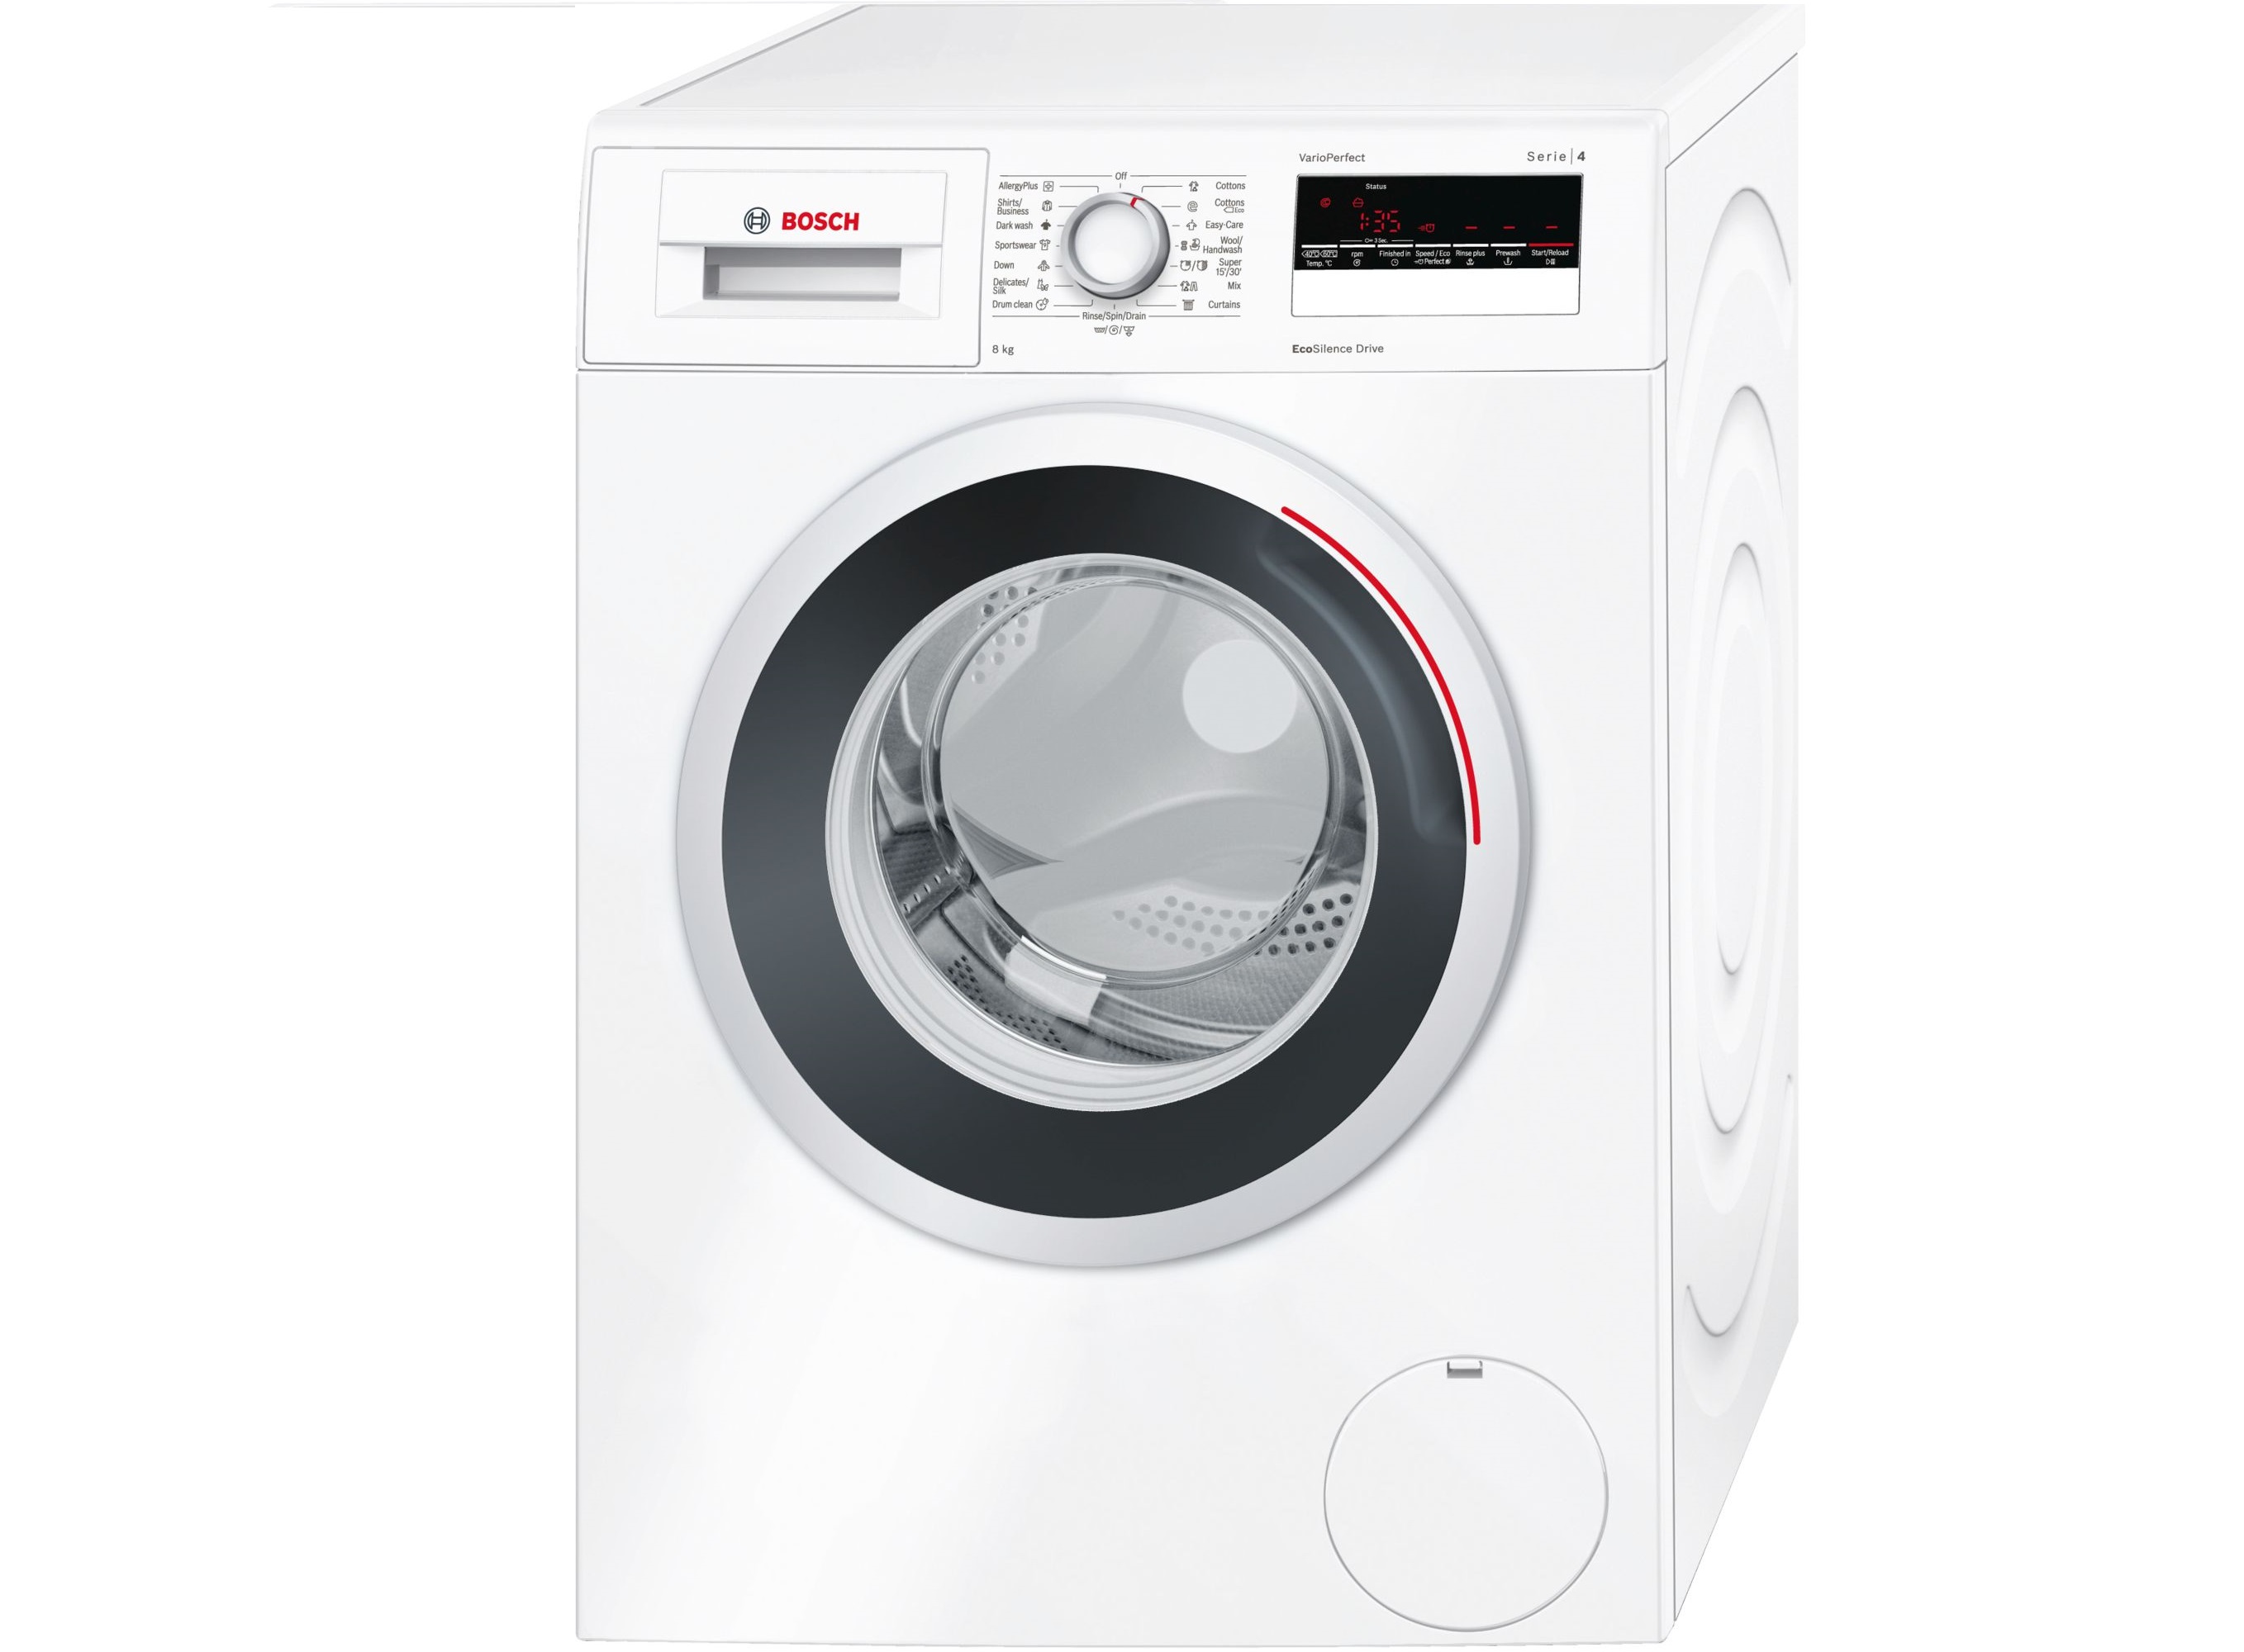 Masina za pranje vesa Bosch WAN 24260 BY #bosch10%